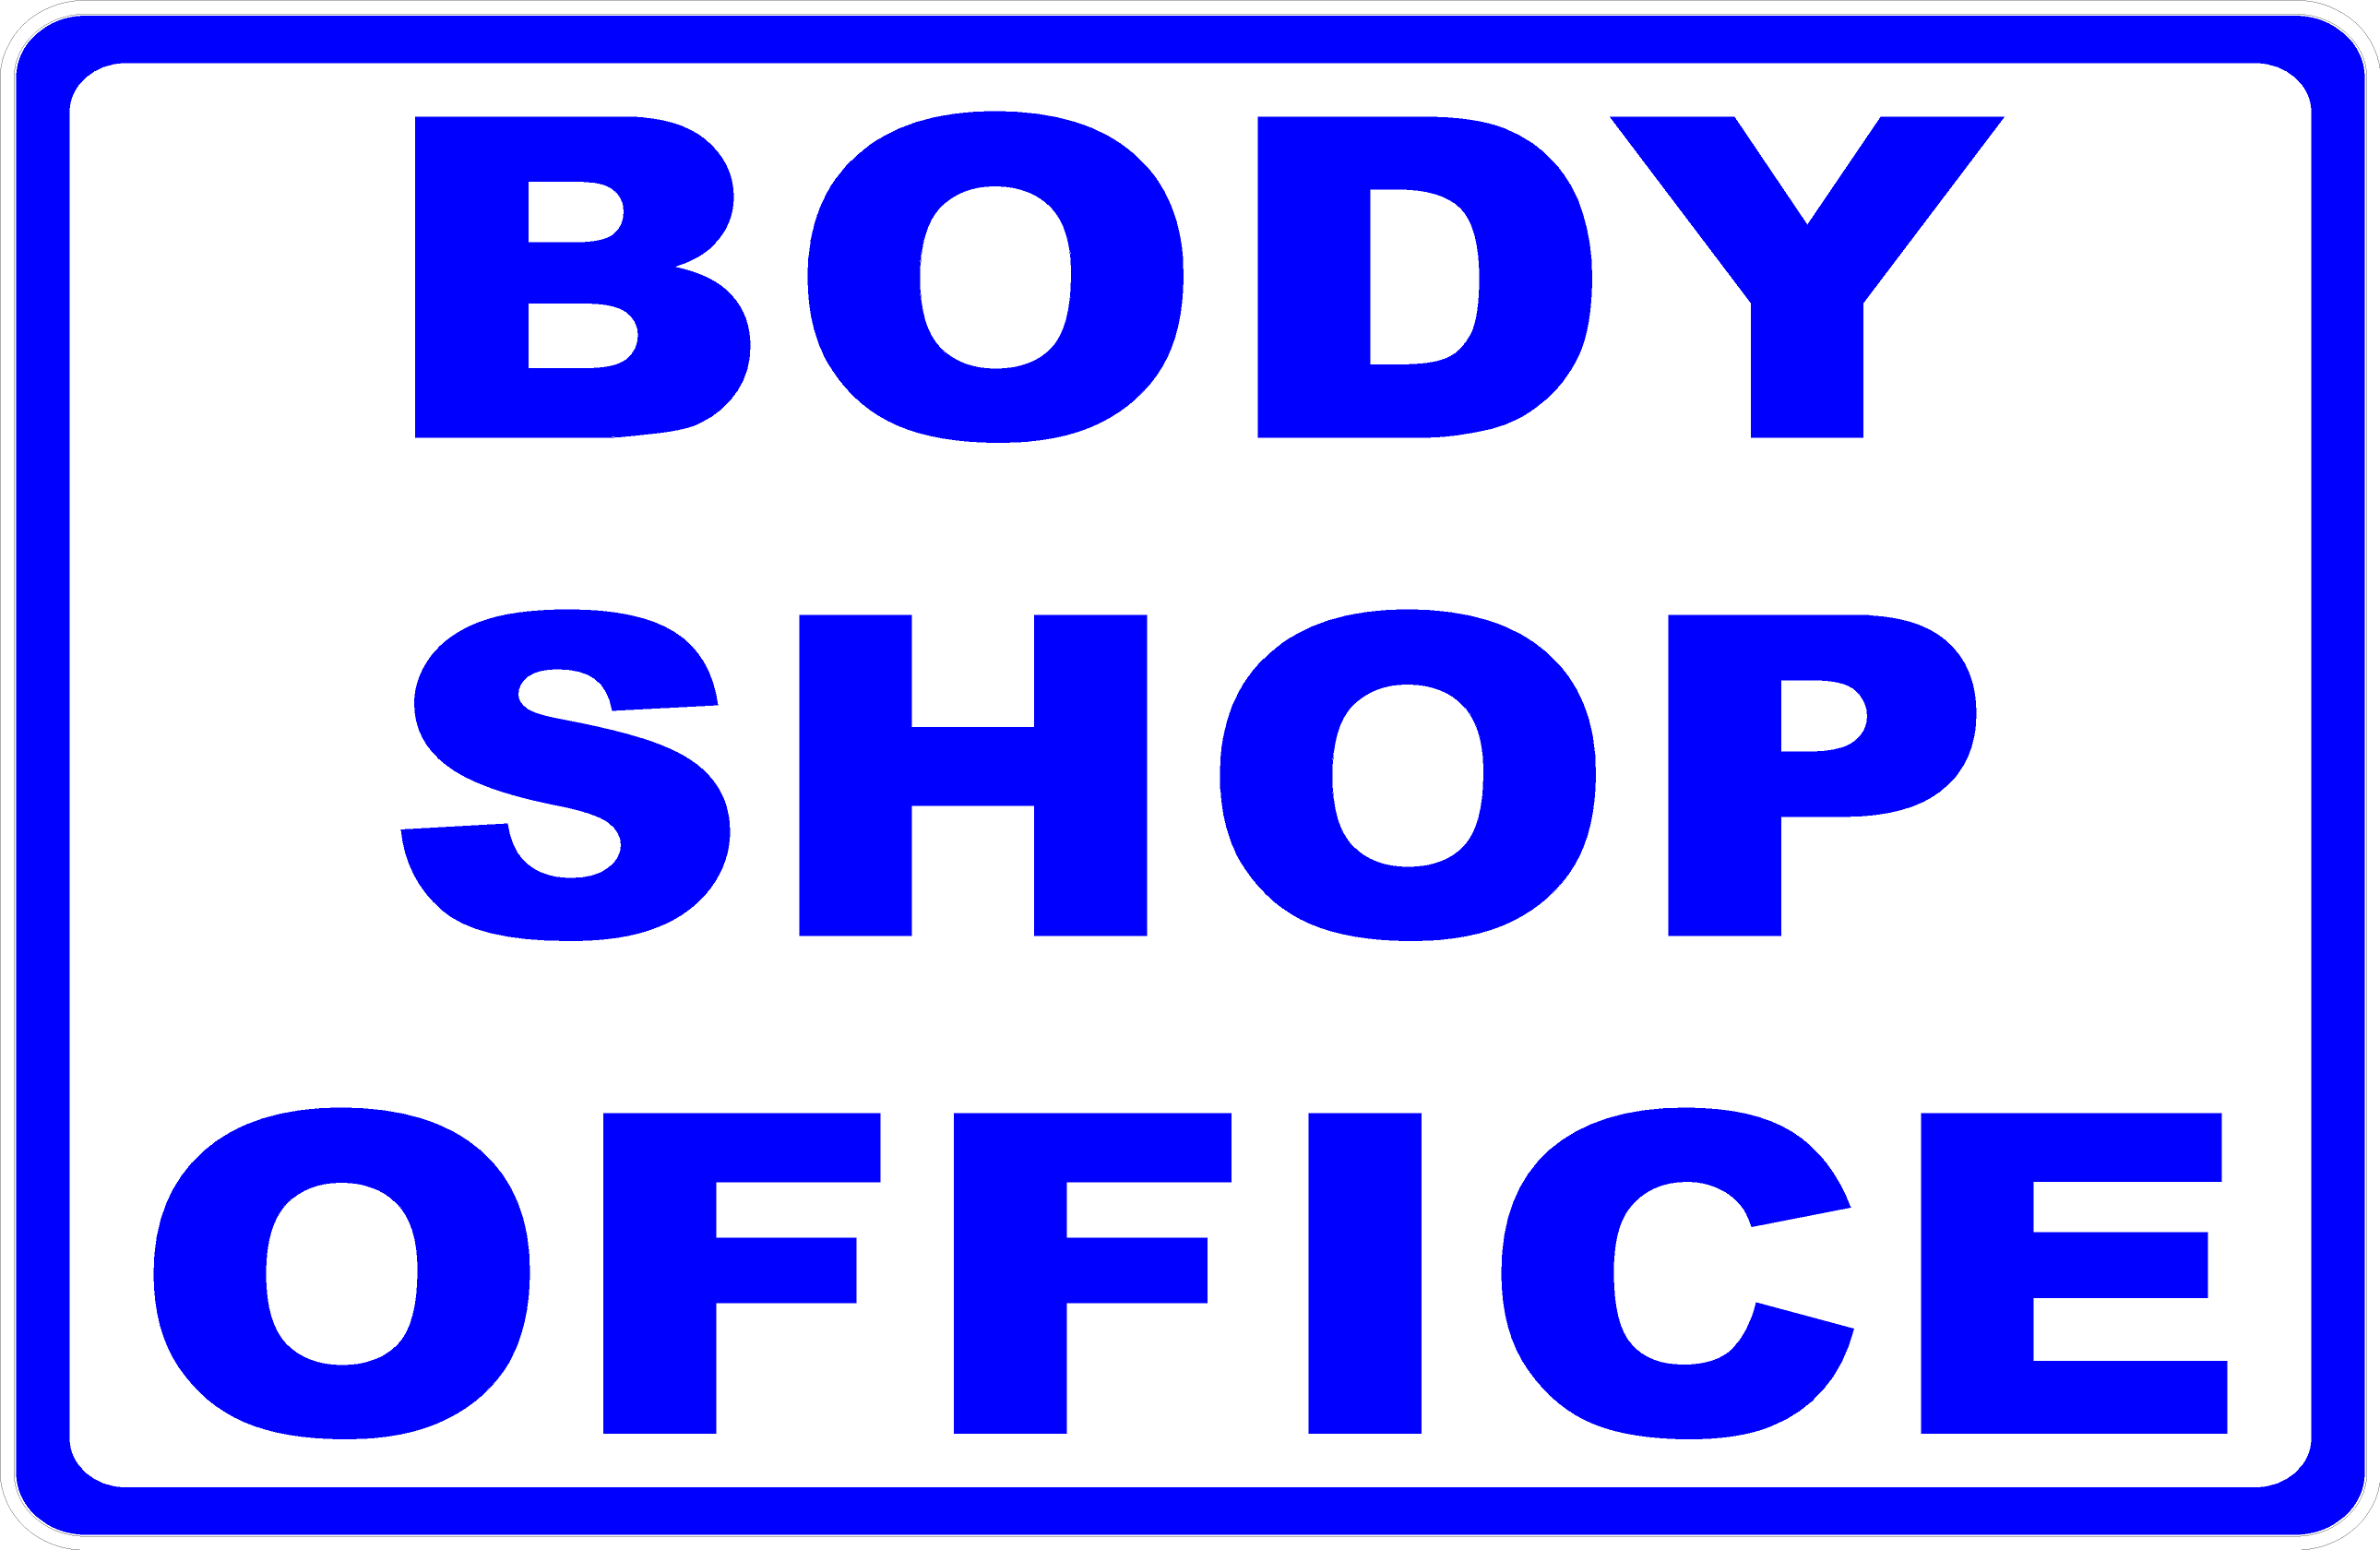 The Body Shop Office Photos